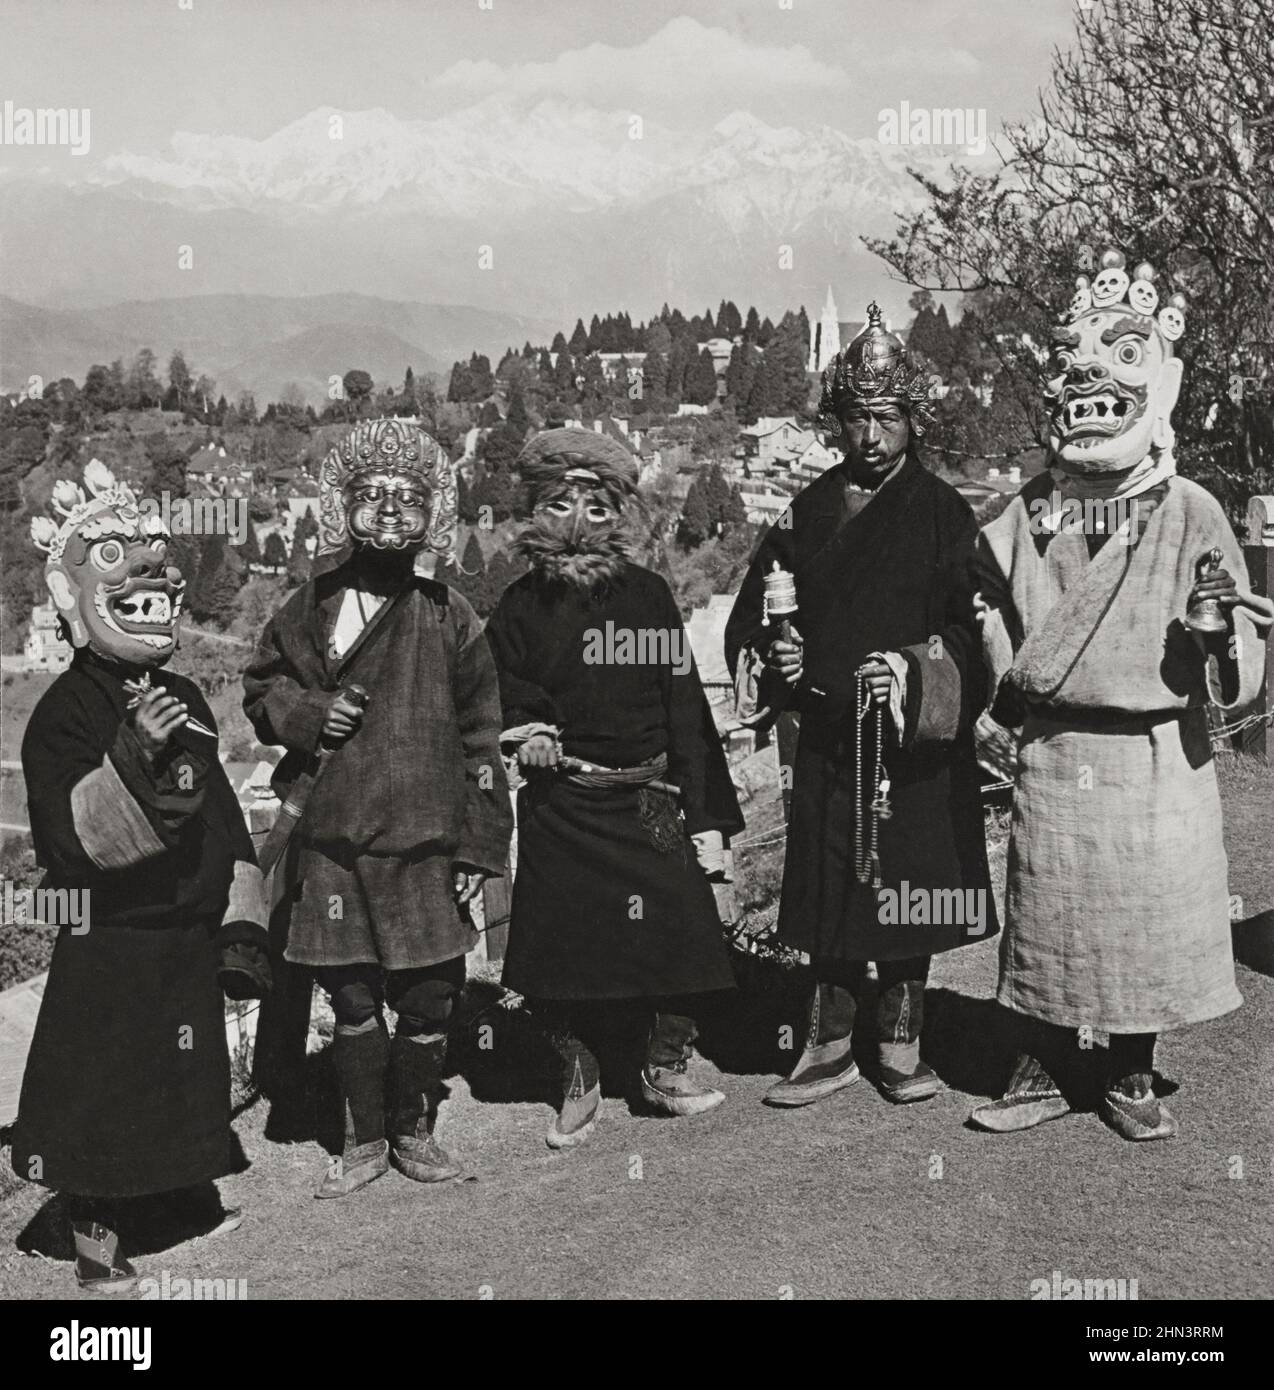 Arte delle maschere tibetane. Foto d'epoca dei ballerini tibetani del diavolo, che garantiscono di allontanare il malvagio. Darjeeling, India. 1907 Foto Stock